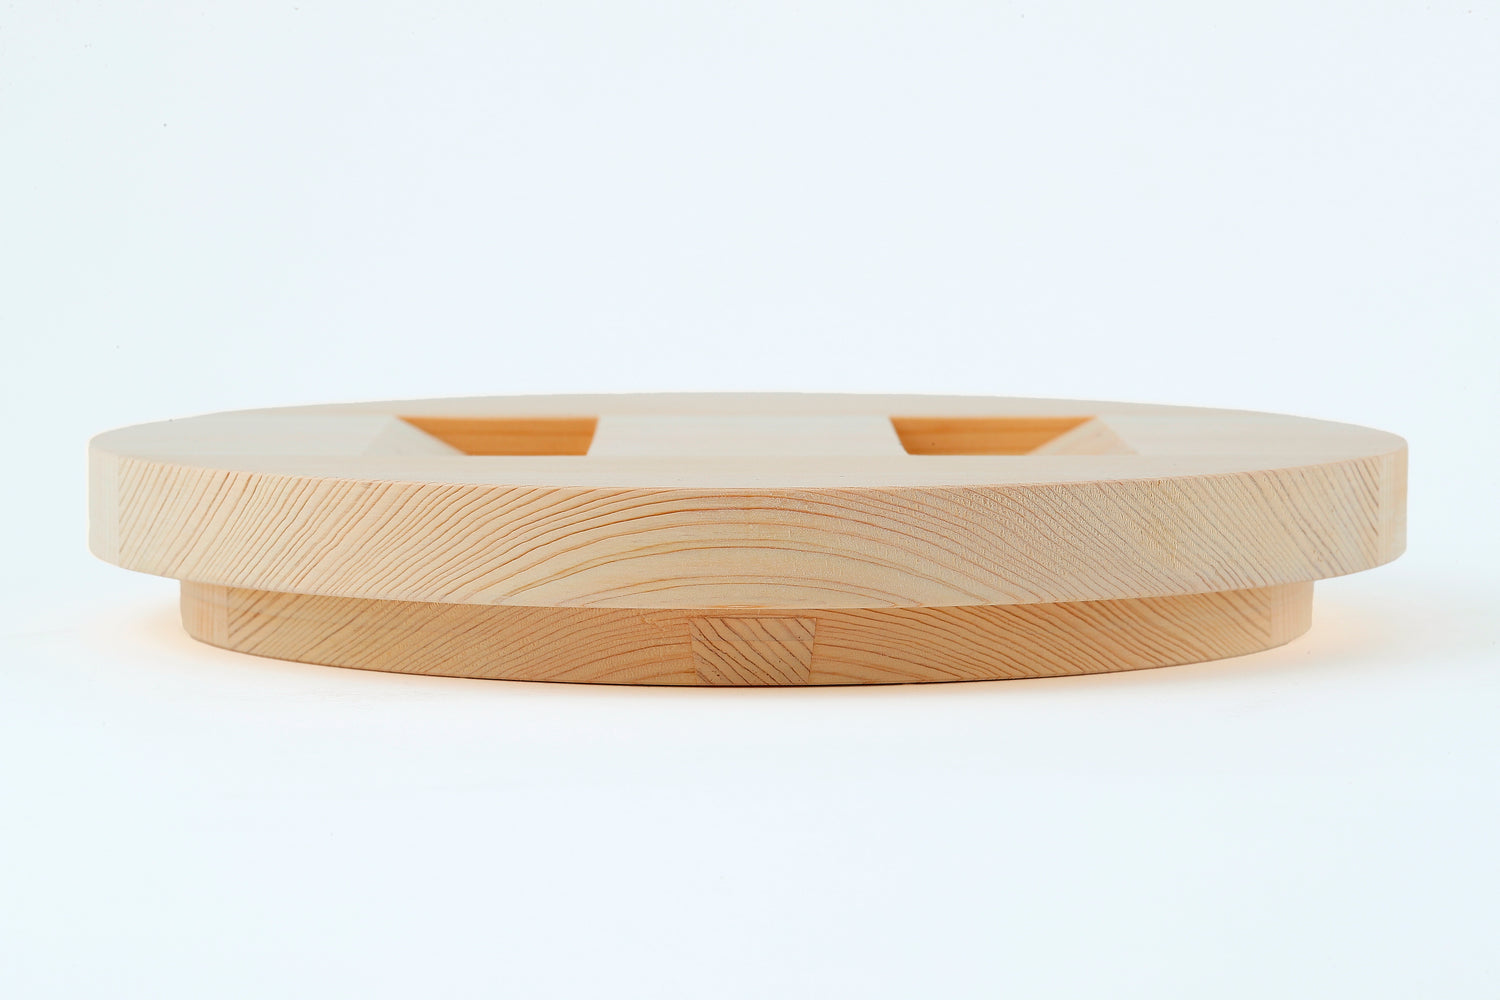 ANAORI kakugama 5.1ℓ Couvercle intérieur en bois